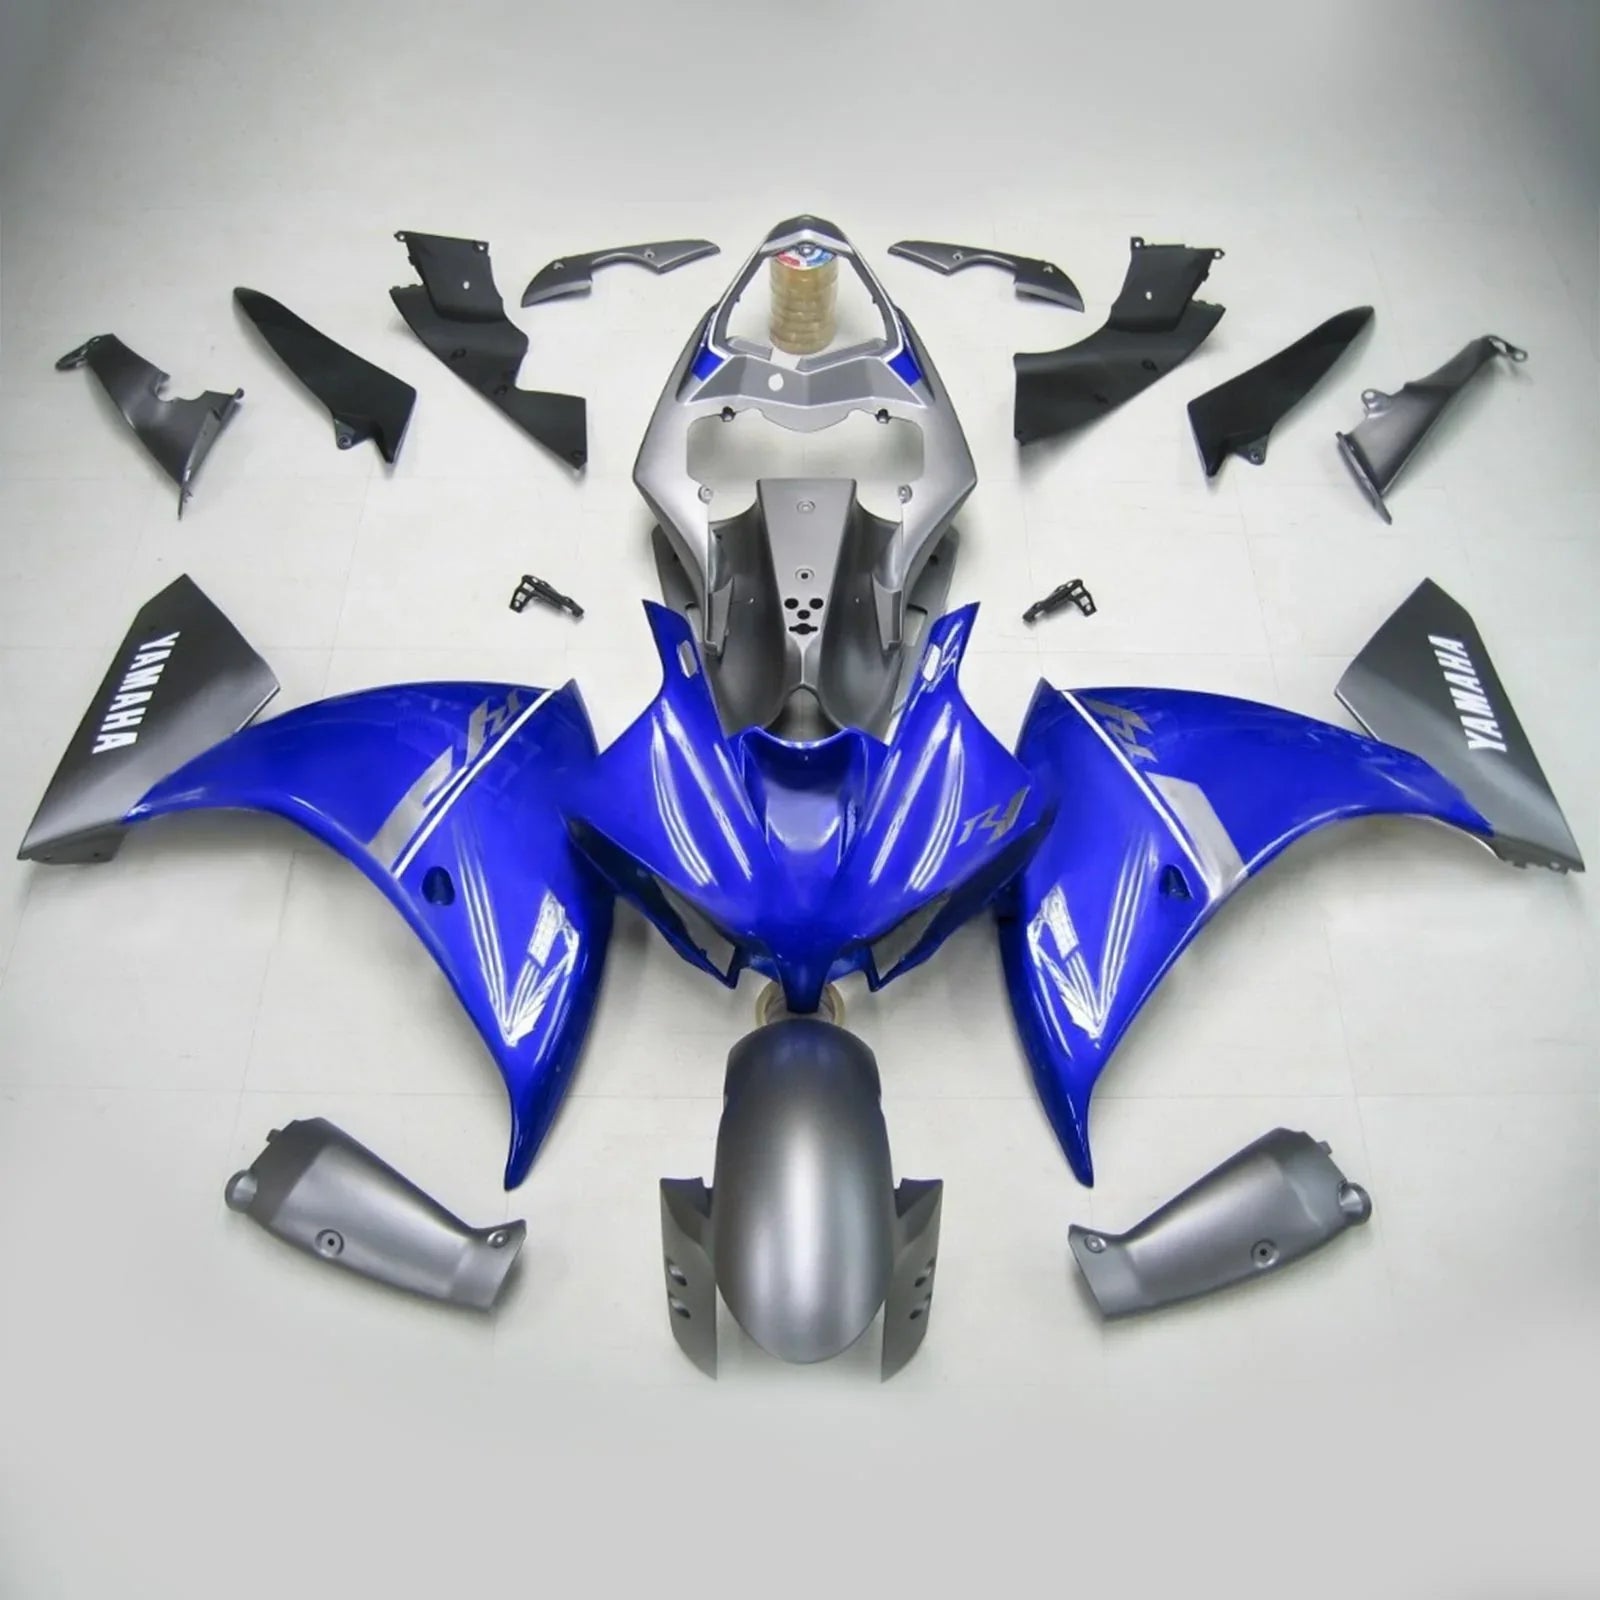 Kit de carénage Amotopart pour Yamaha YZF 1000 R1 2012-2014 générique